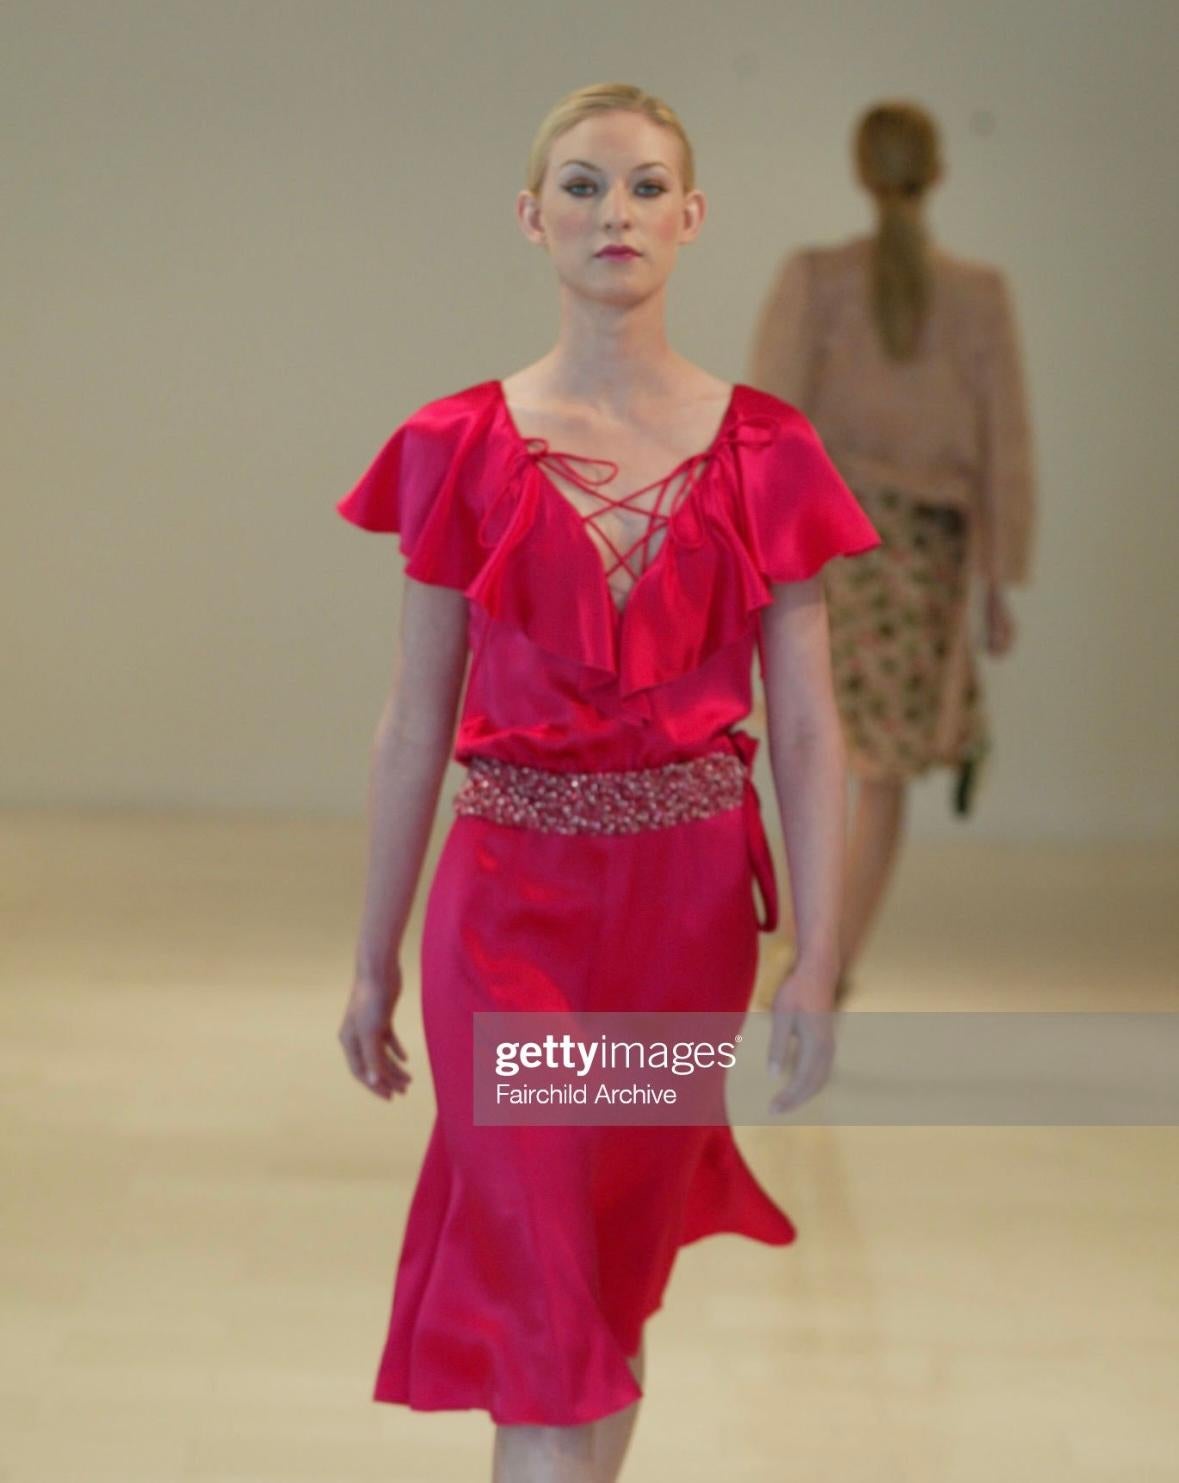 Collectional présente une magnifique robe à volants en satin de soie rose, conçue par Valentino Garavani pour sa collection Resort 2004. Cette fabuleuse robe est entièrement construite en satin de soie et présente des manches pétales à volants, un